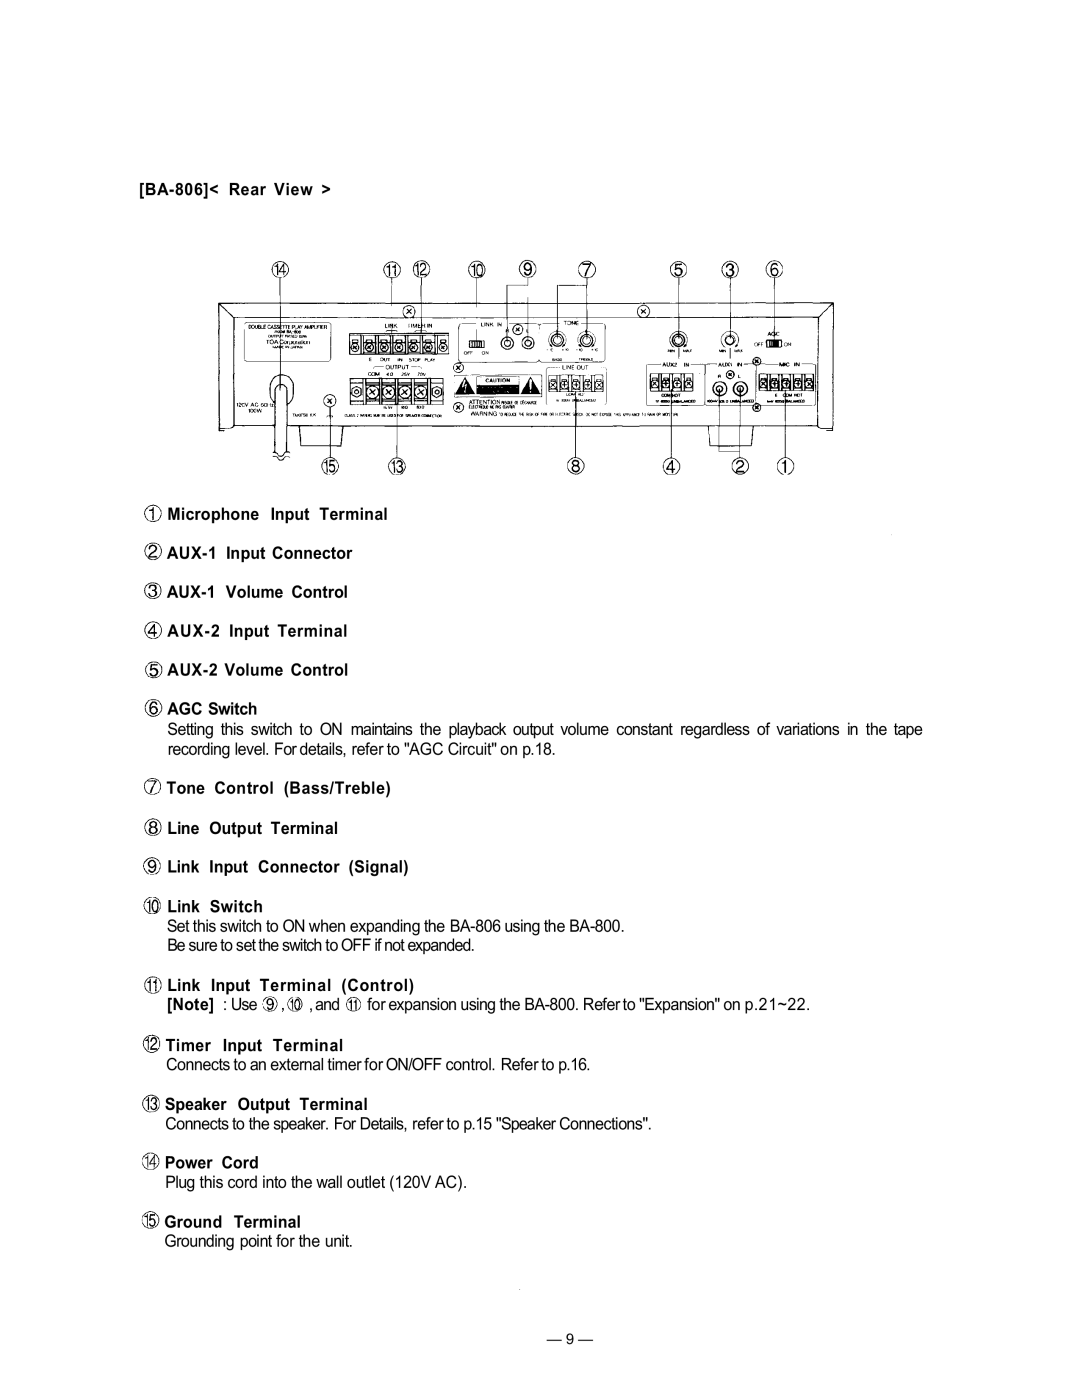 TOA Electronics BA-800 manual BA-806 Rear View Microphone Input Terminal 